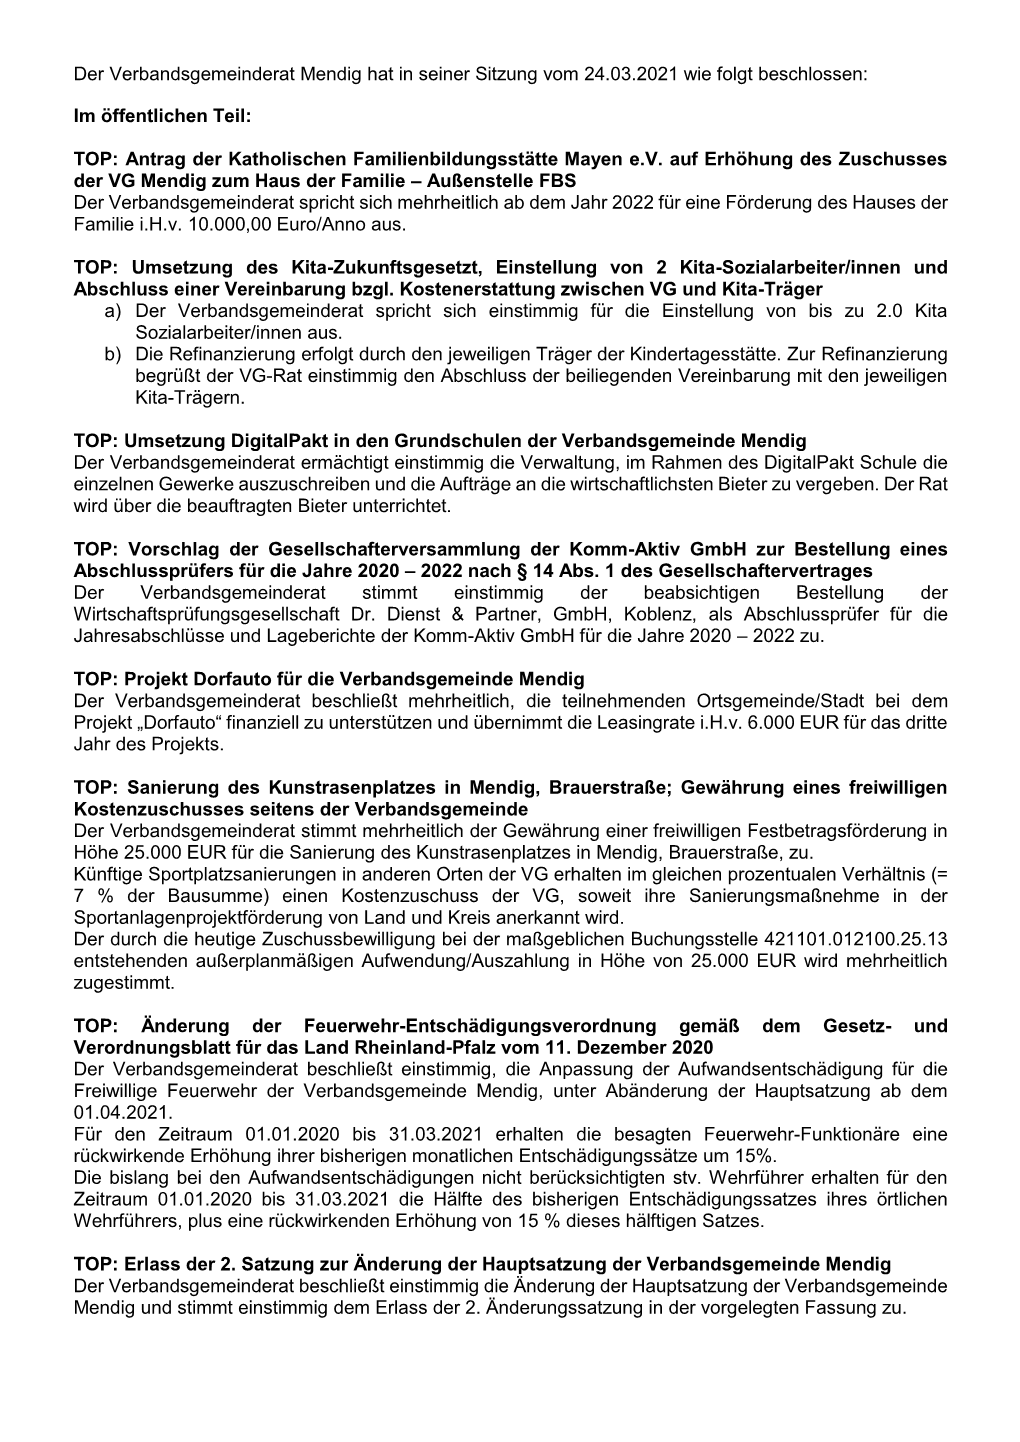 Der Verbandsgemeinderat Mendig Hat in Seiner Sitzung Vom 24.03.2021 Wie Folgt Beschlossen